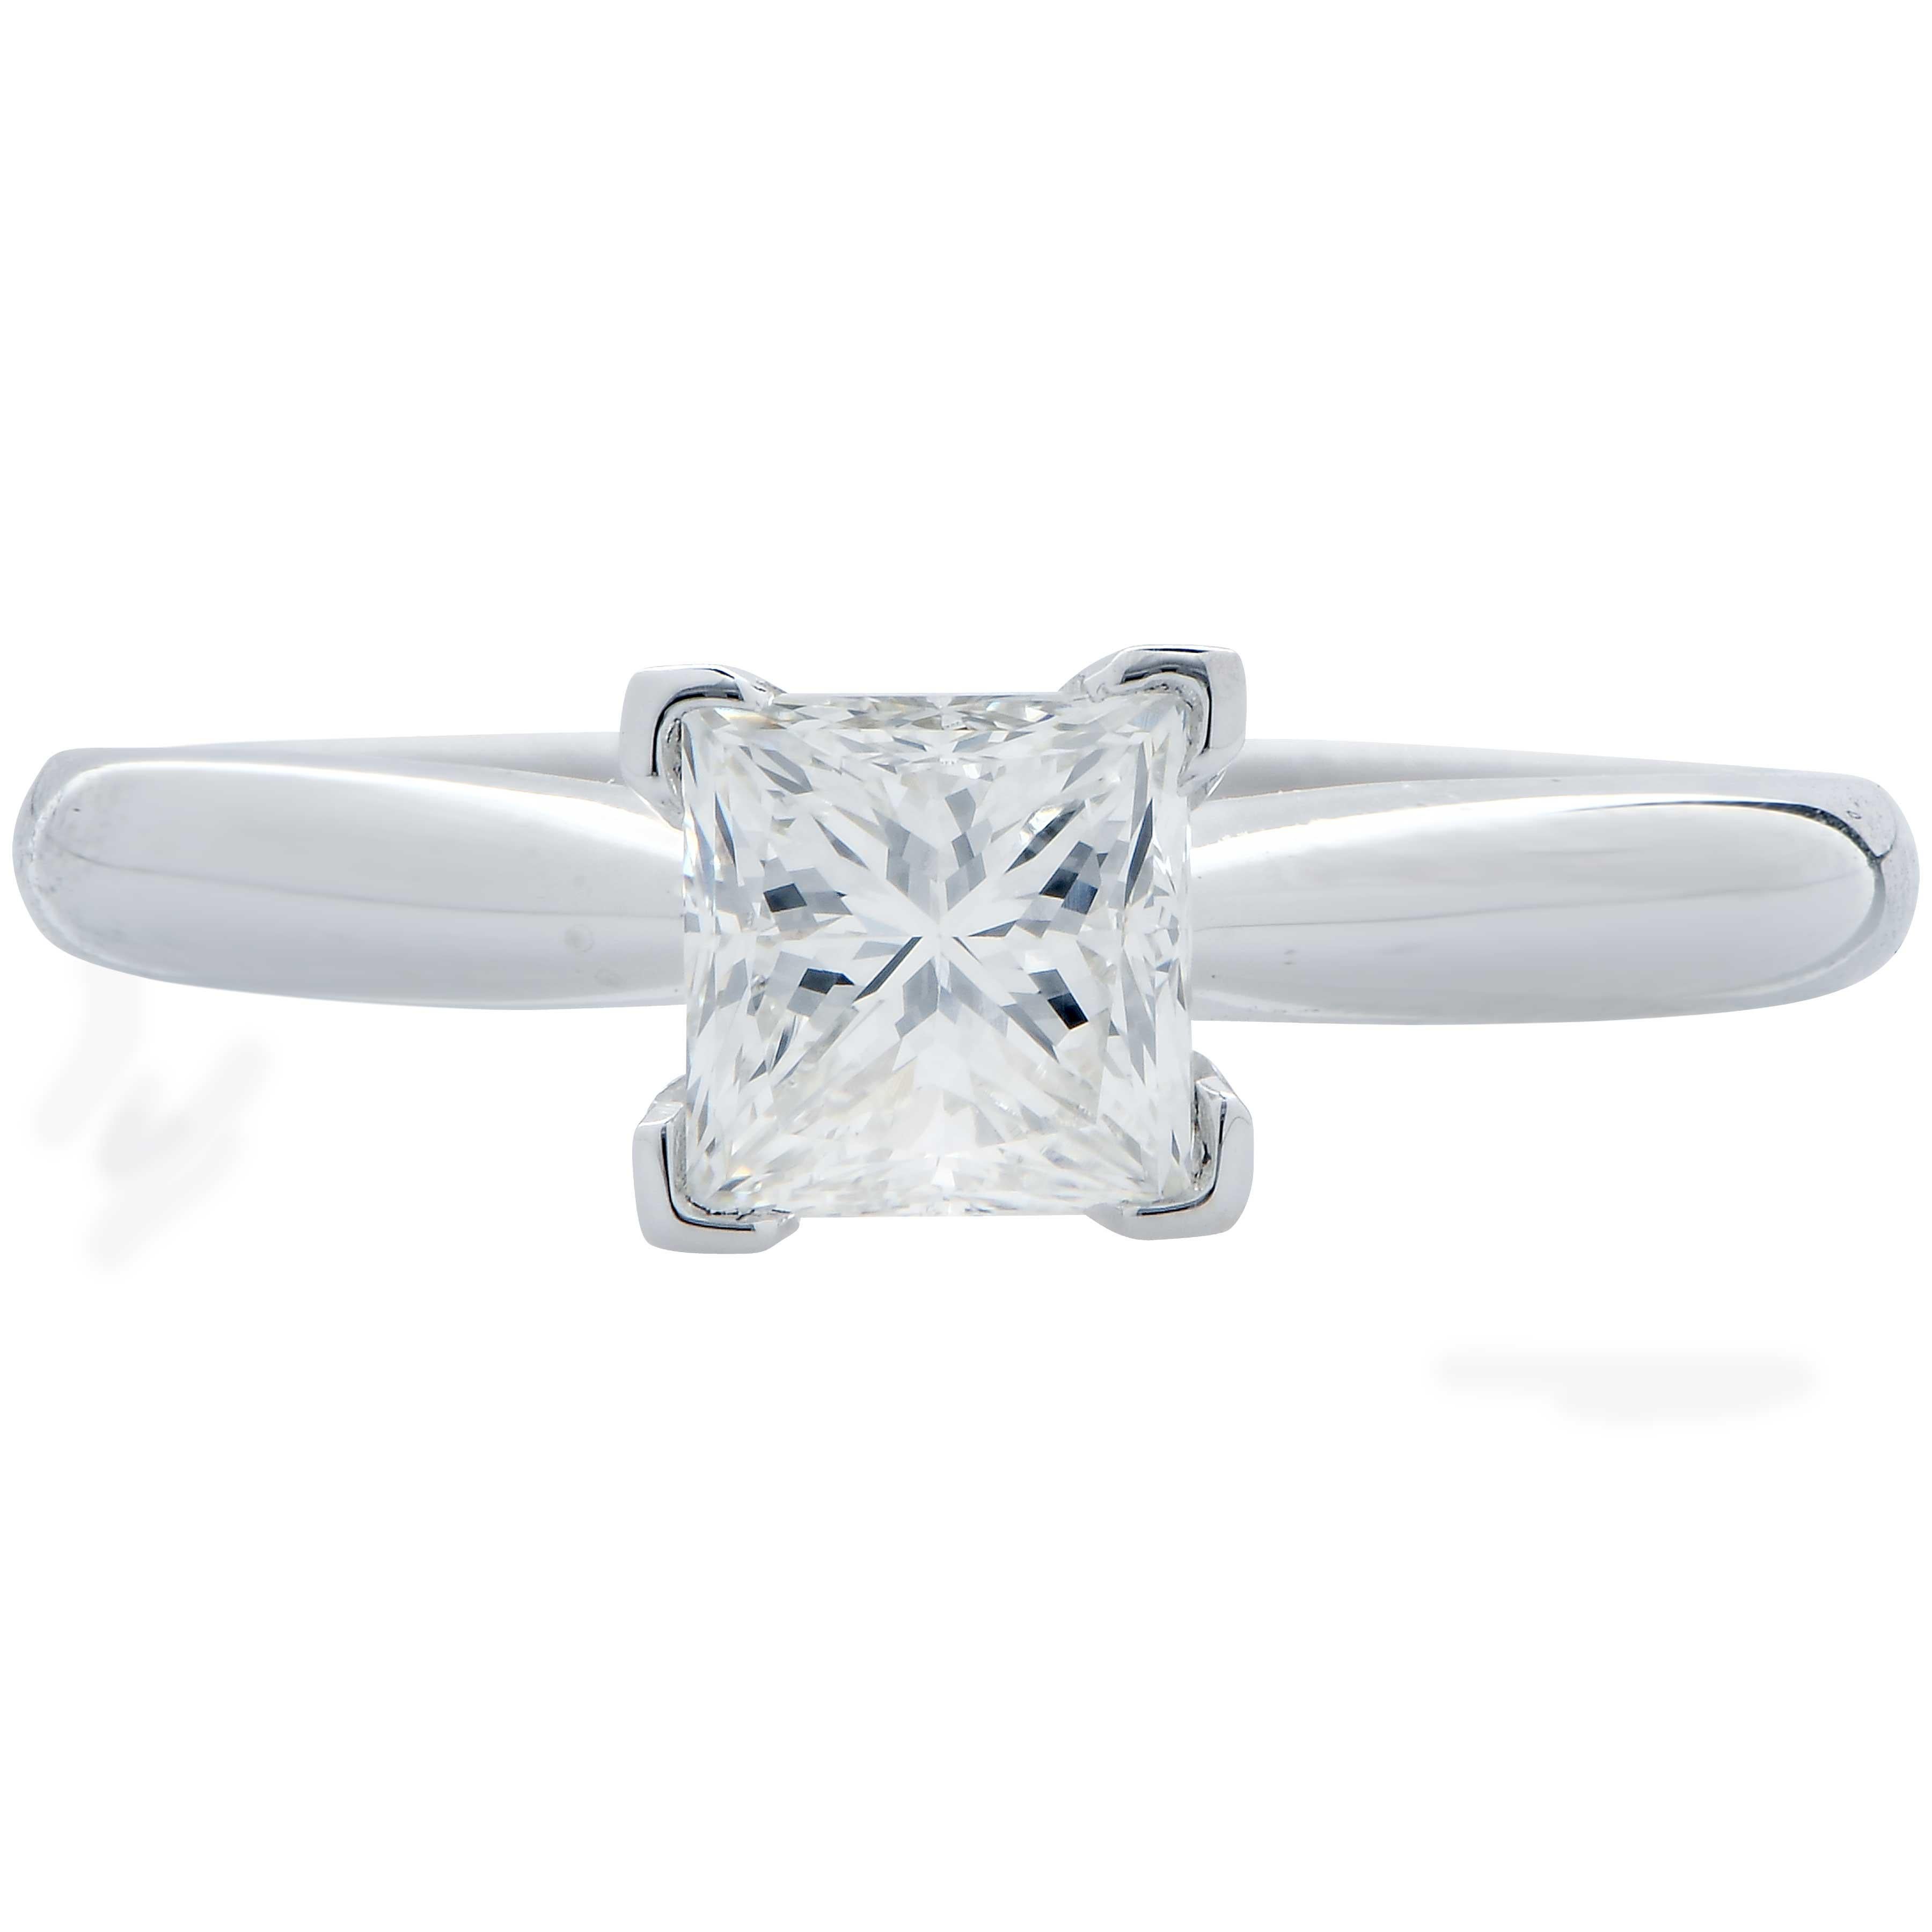 .91 Carat GIA Graded H / VS1 Princess Cut Diamond Engagement Ring set in 14 Karat White Gold.
Ring Size: 6.5
Metal Weight: 2.1 Grams
